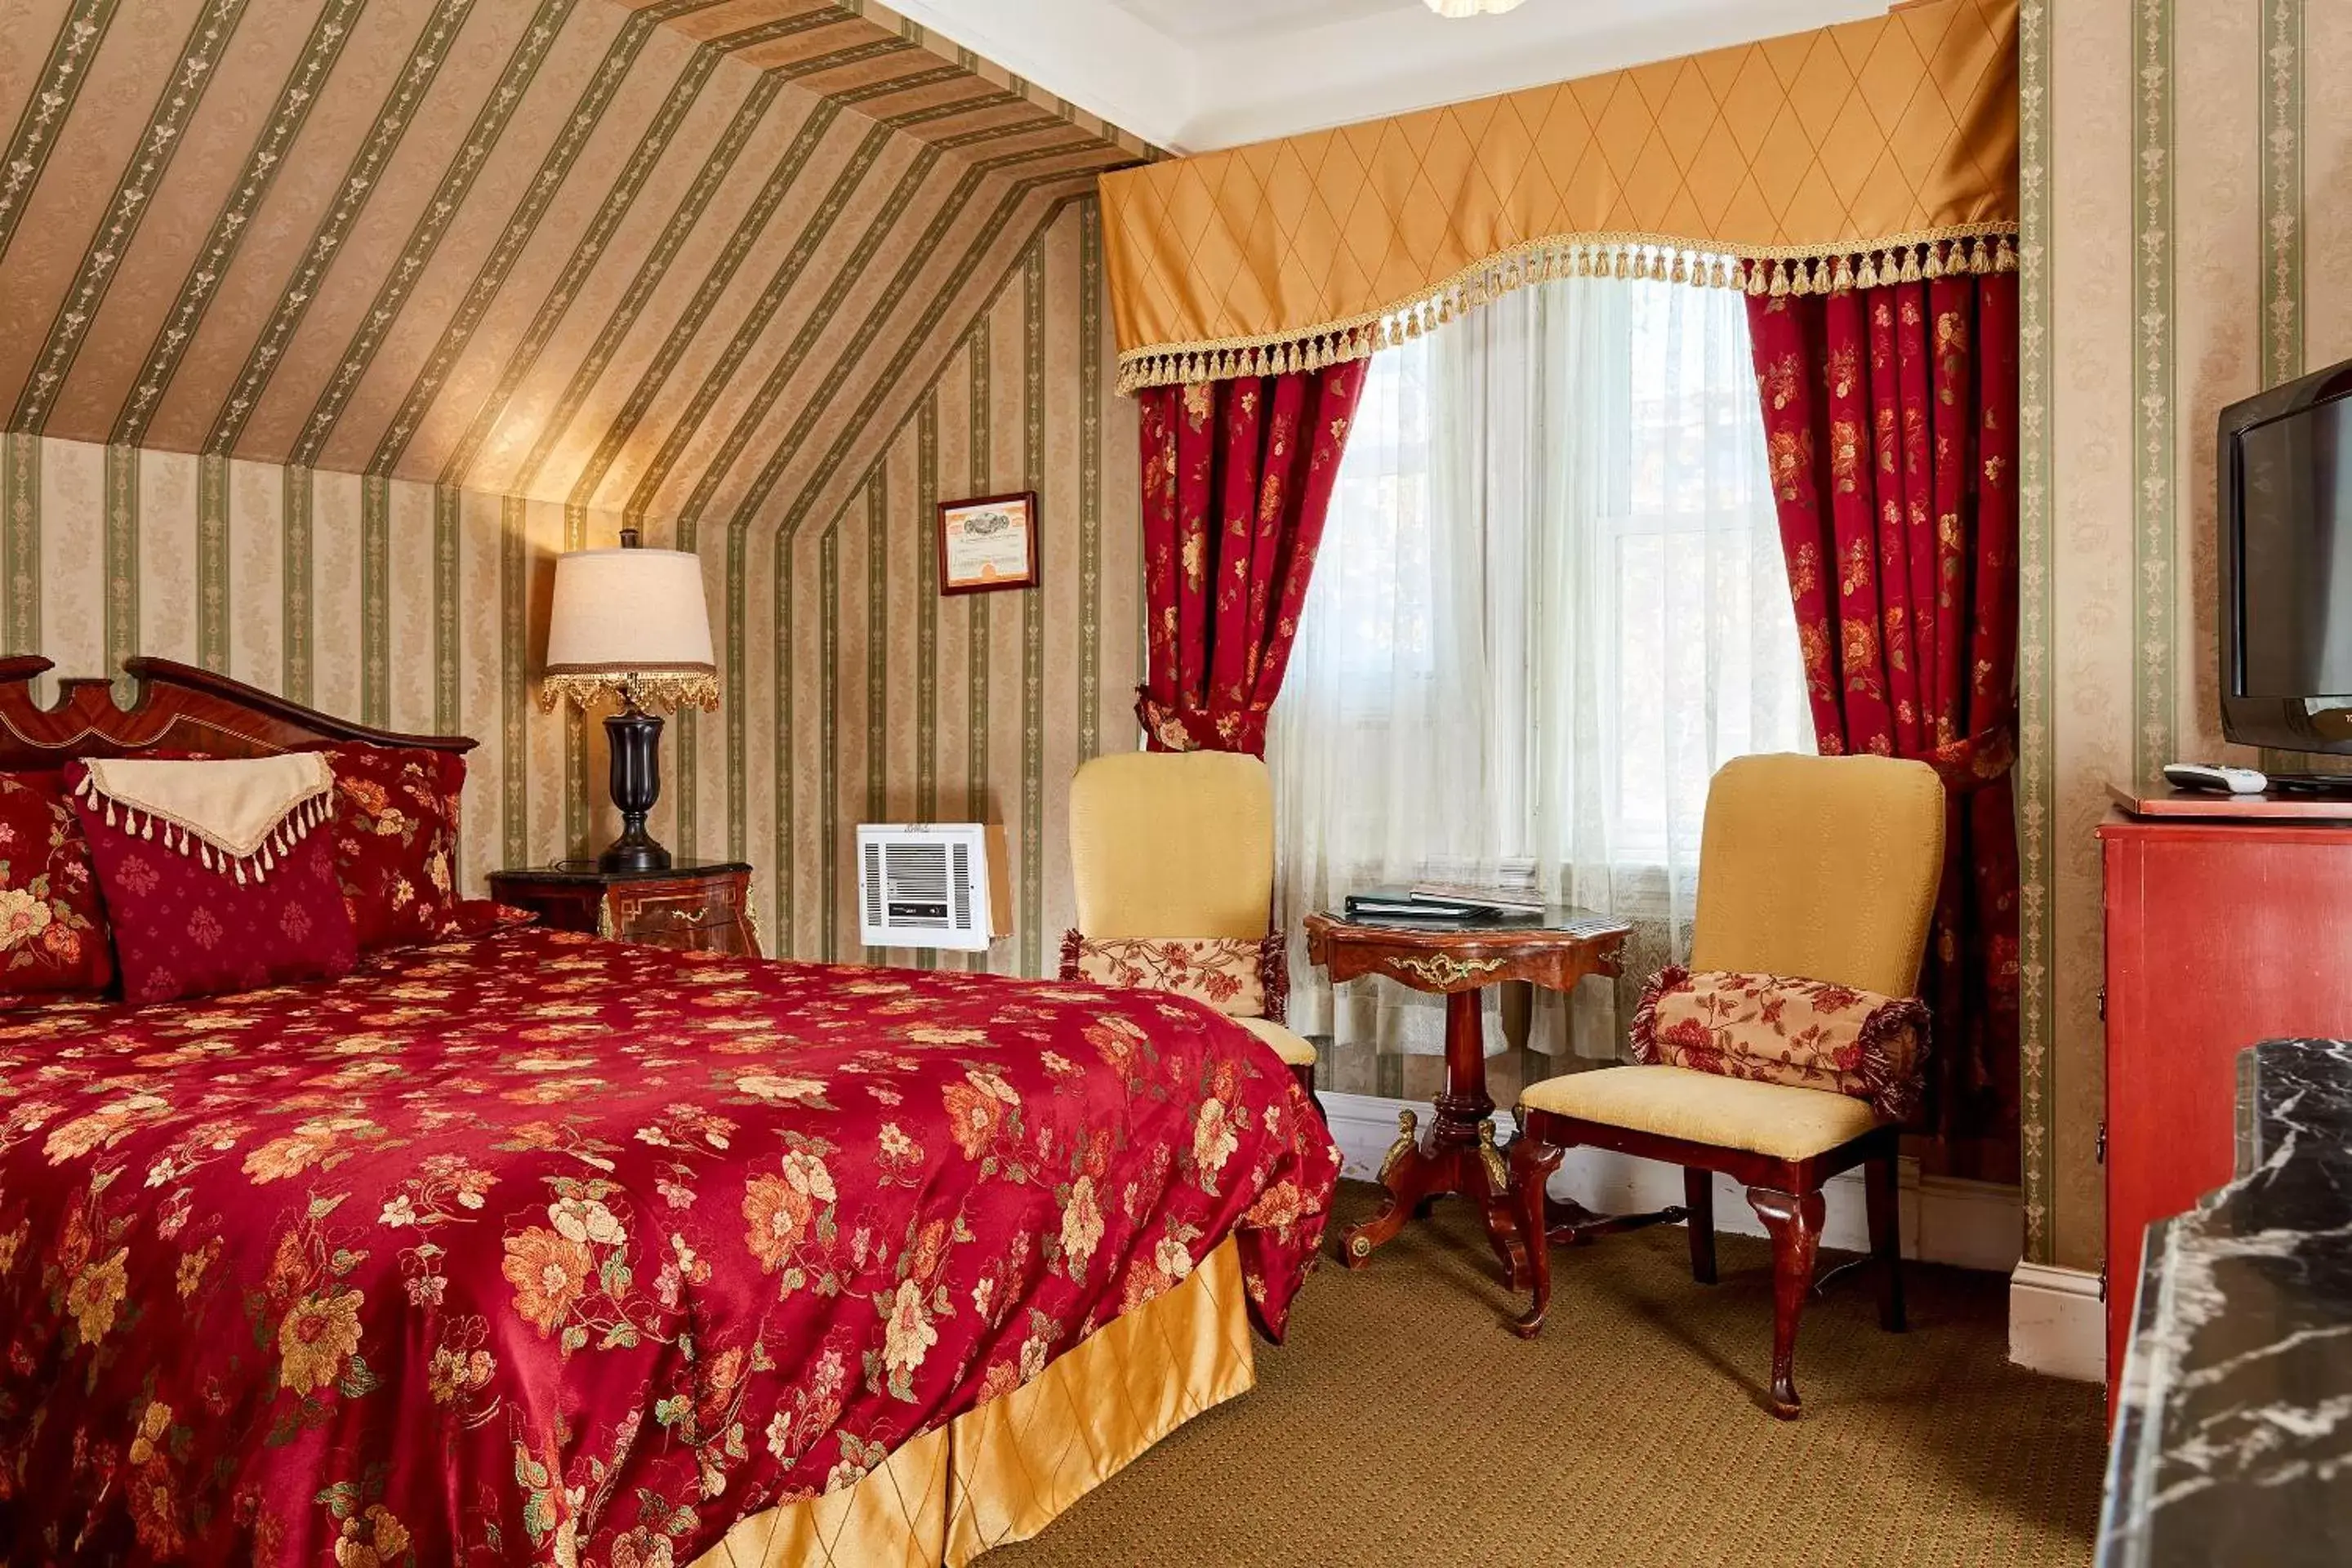 Standard Queen Room in Queen Anne